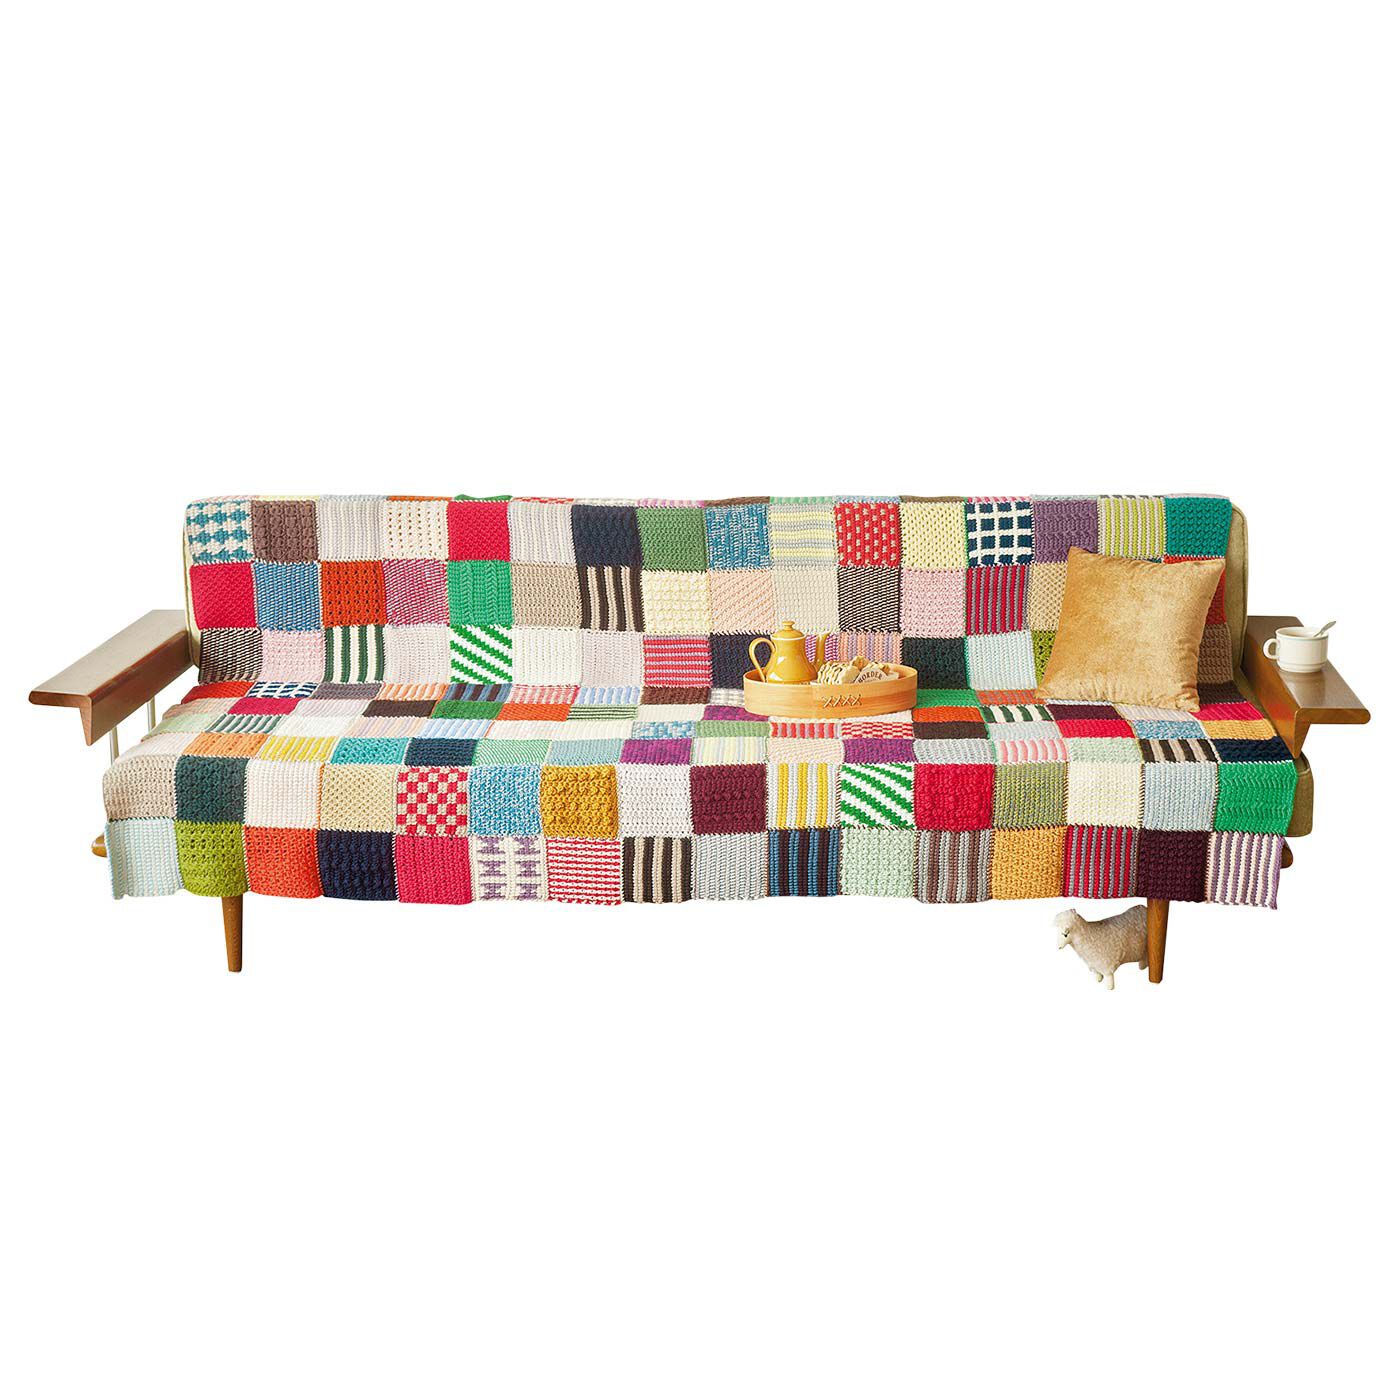 クチュリエ|ぽってり編み地がなつかしいアフガン編みのサンプラーの会|160枚でソファーカバーに。